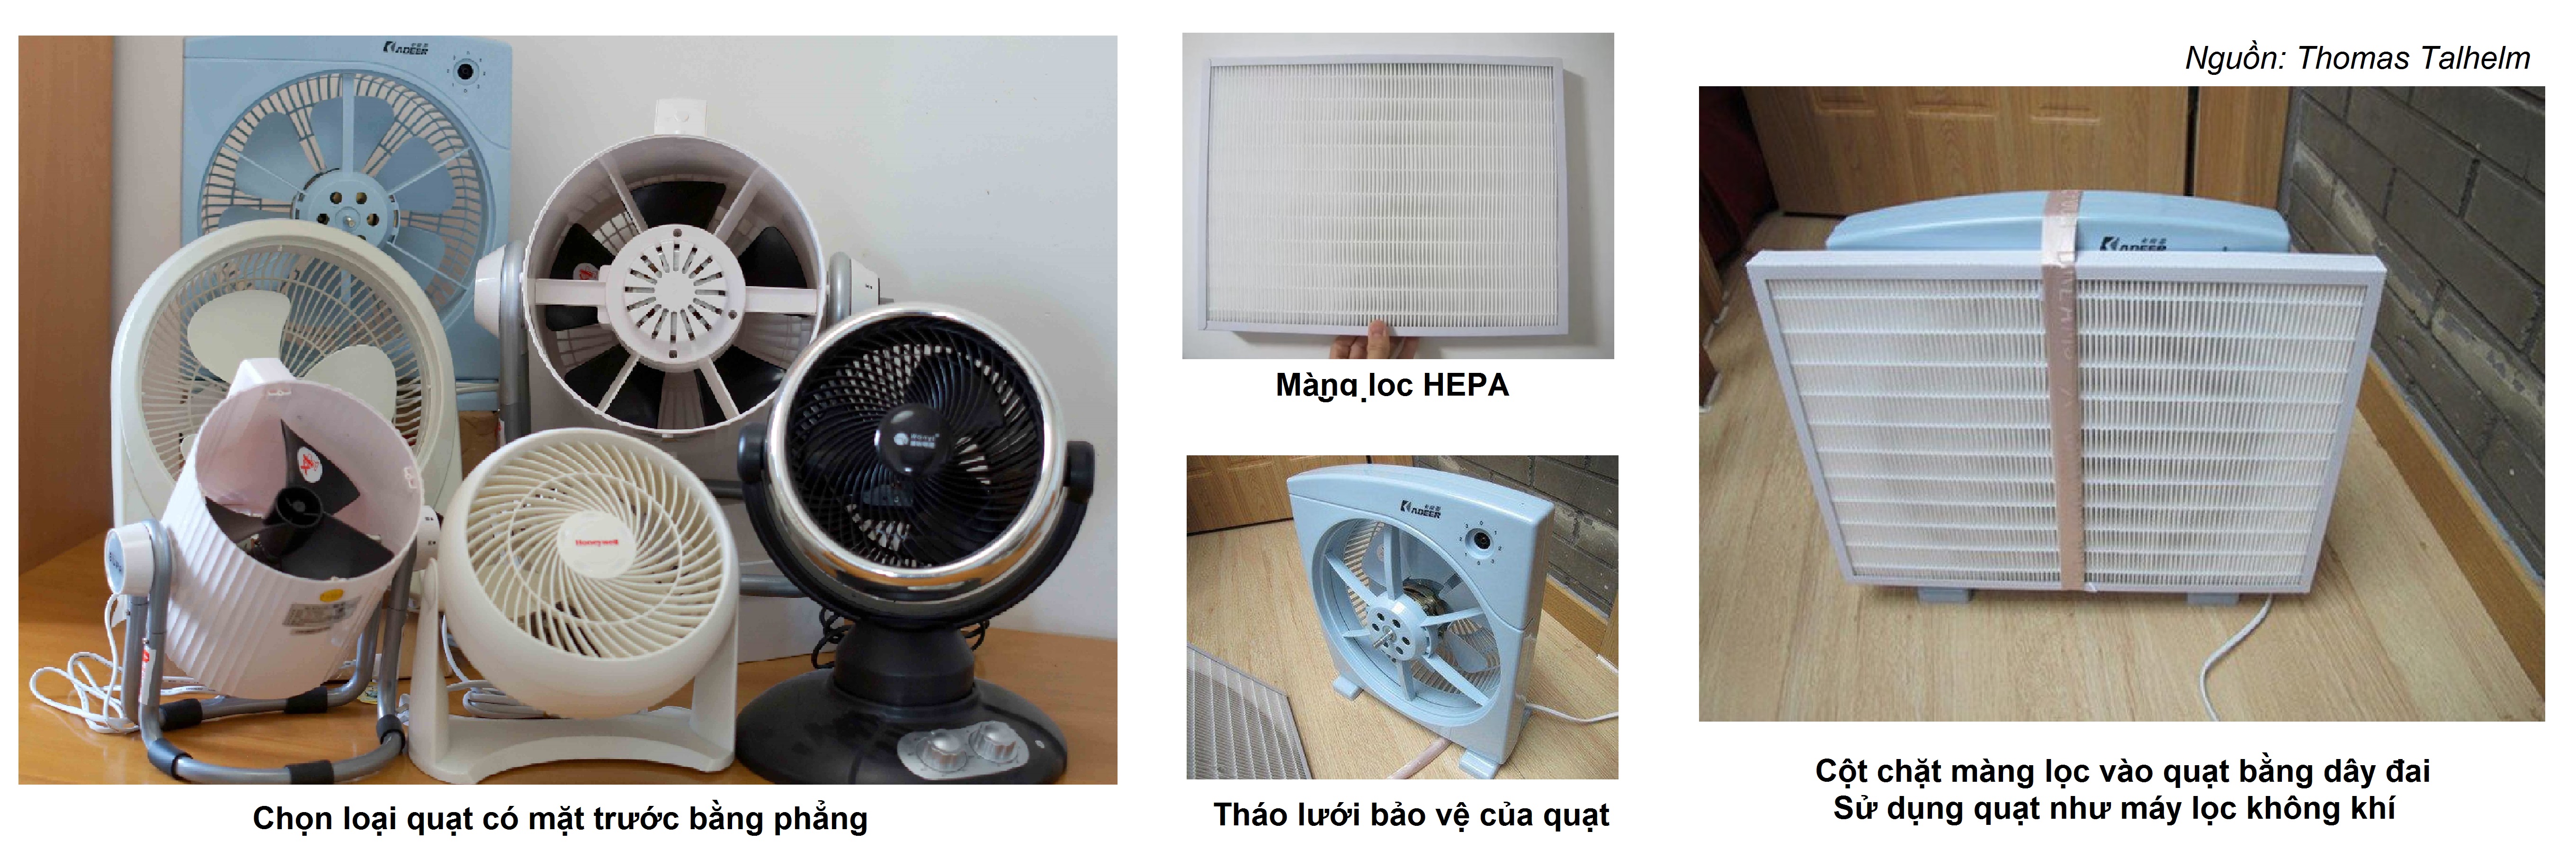 Cách thức tự làm máy lọc không khí bằng màng HEPA tại nhà | Nguồn: Thomas Talhelm